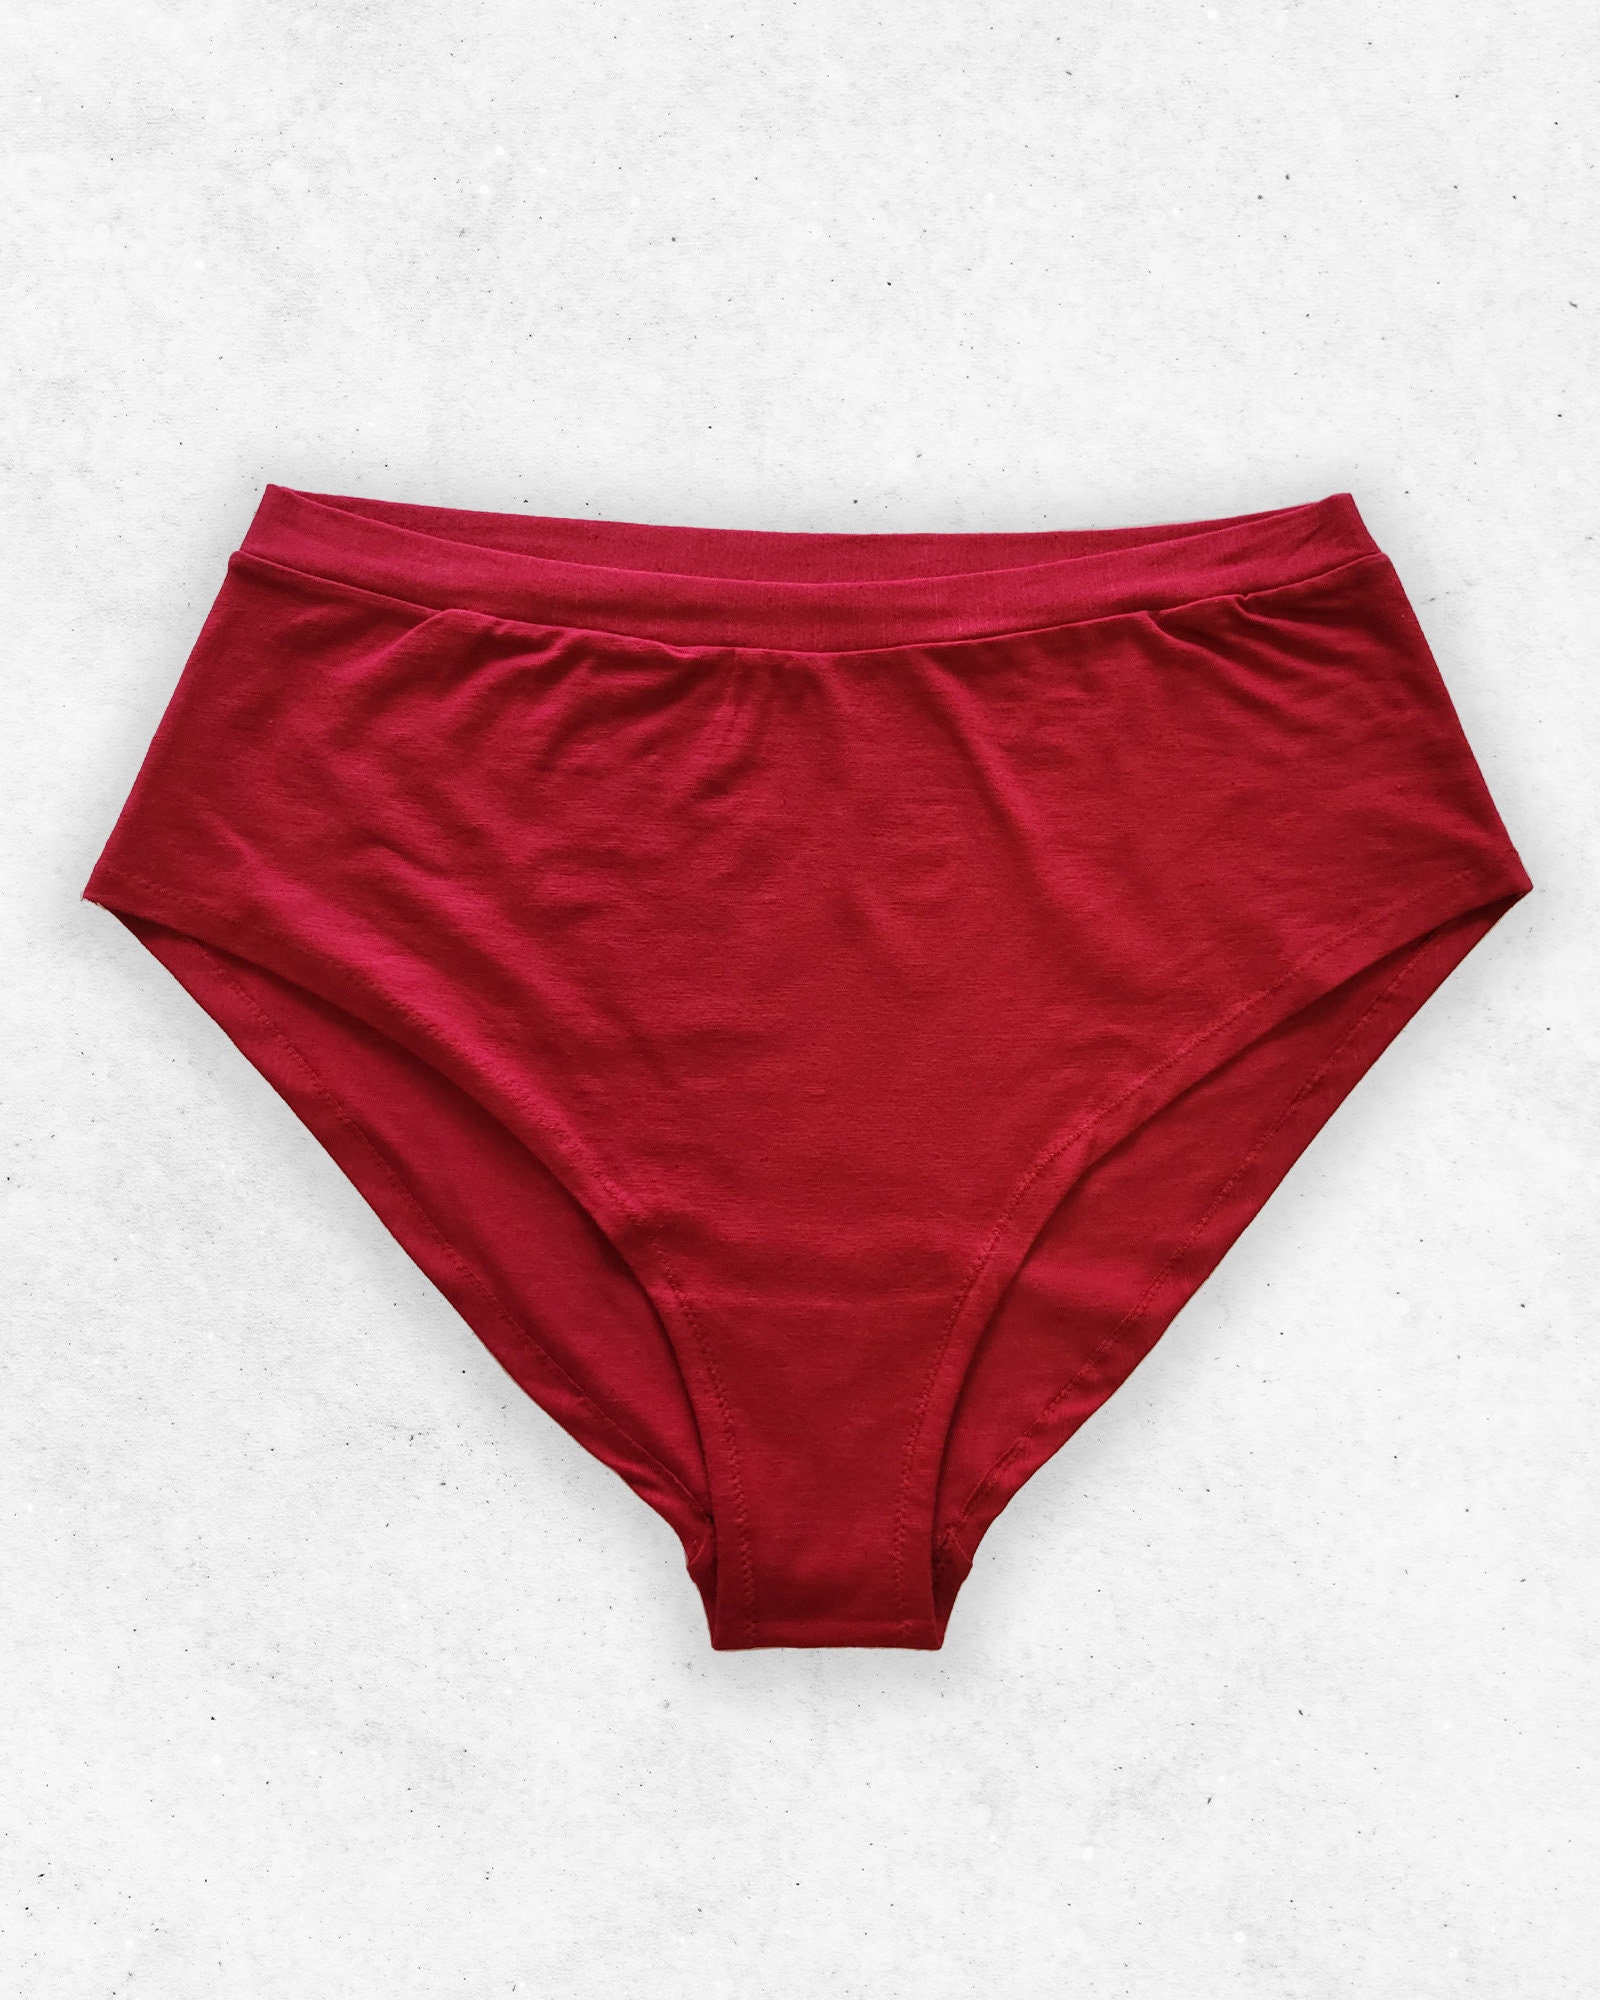 Plus Size Underwear High Waist Bamboo Cotton Brief. No Elastic Red